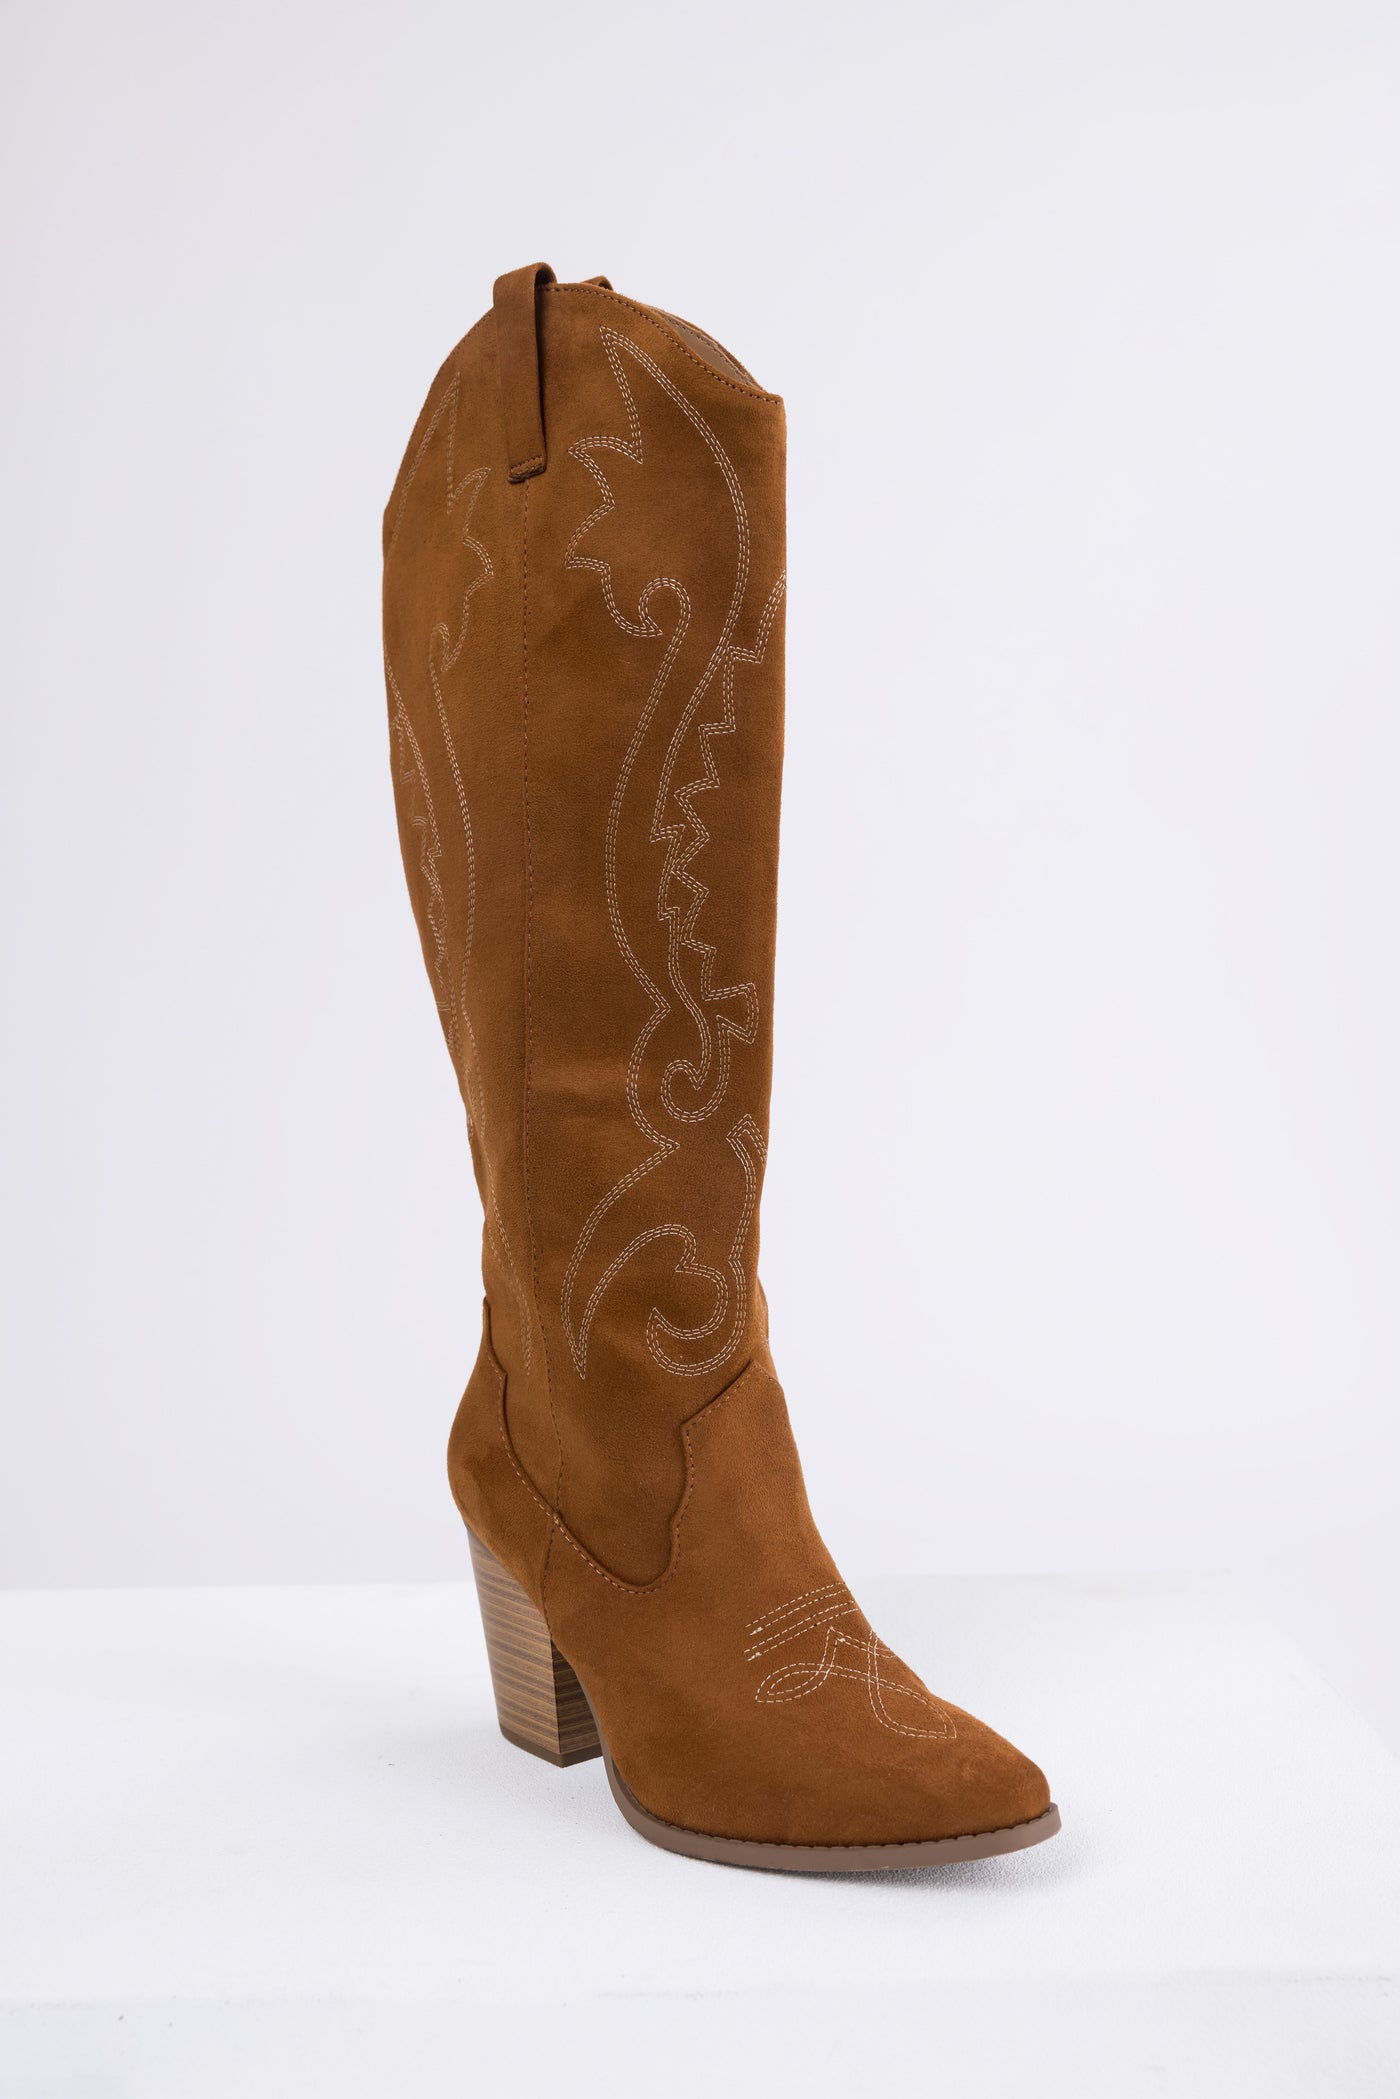 Caramel Knee High Block High Heel Western Boots